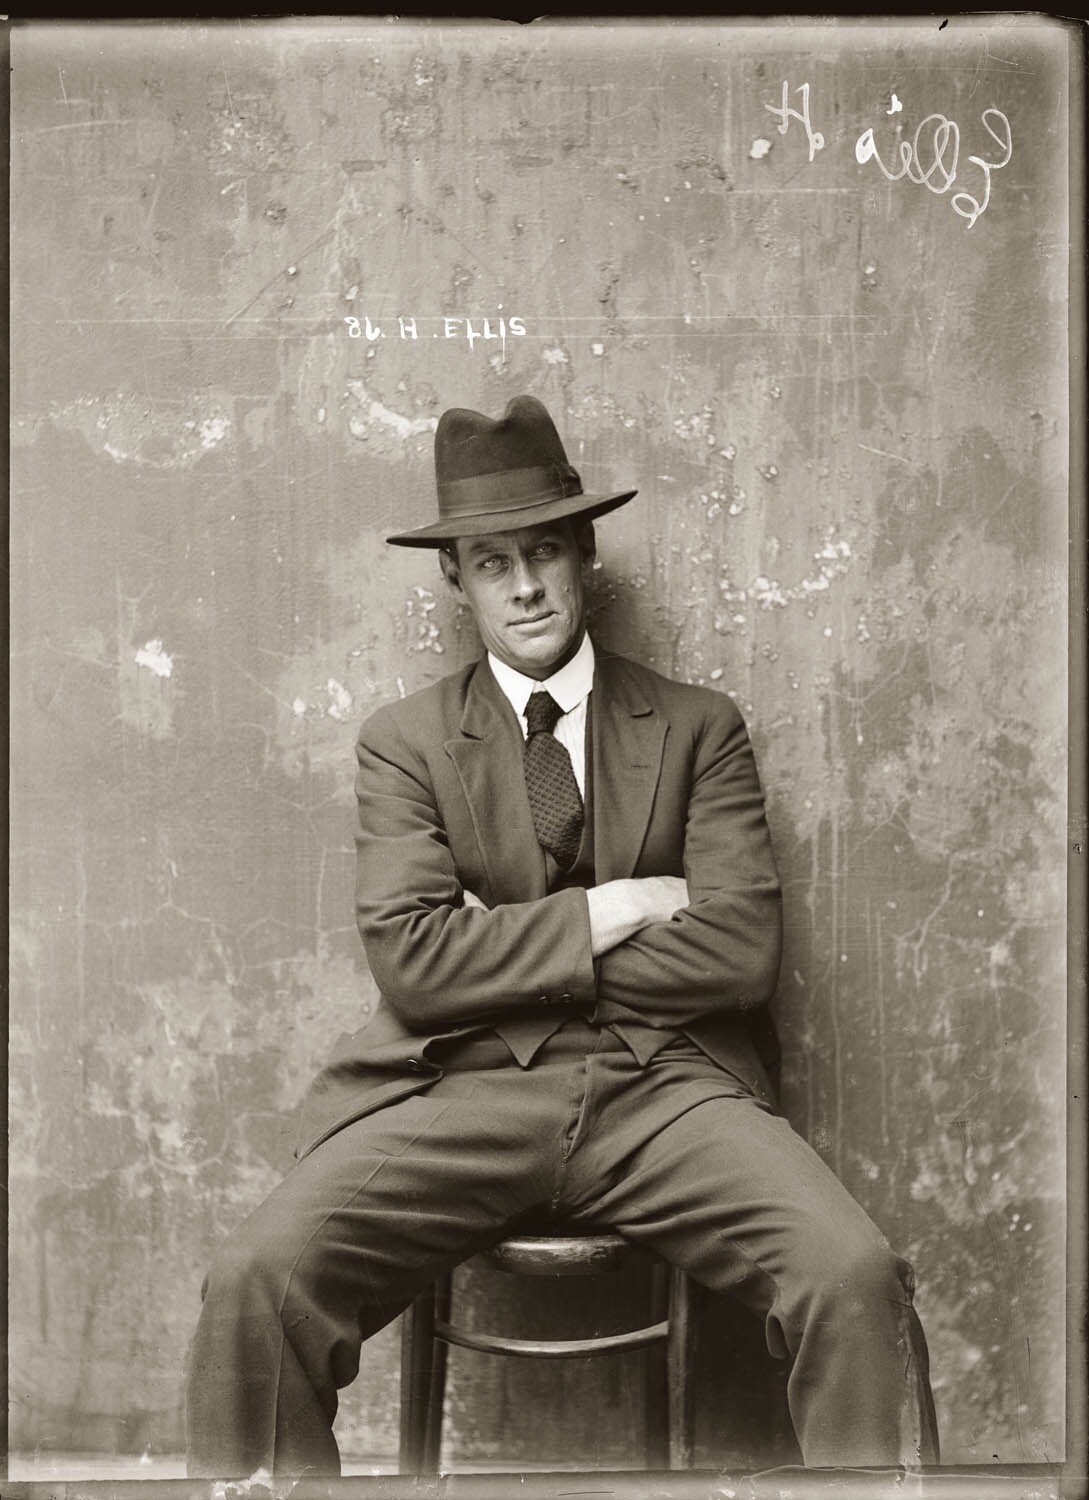 Герберт Эллис, в многочисленных полицейских отчётах указан как взломщик домов, магазинов, сейфов, 1920 год. Архив судебной фотографии полиции Нового Южного Уэльса